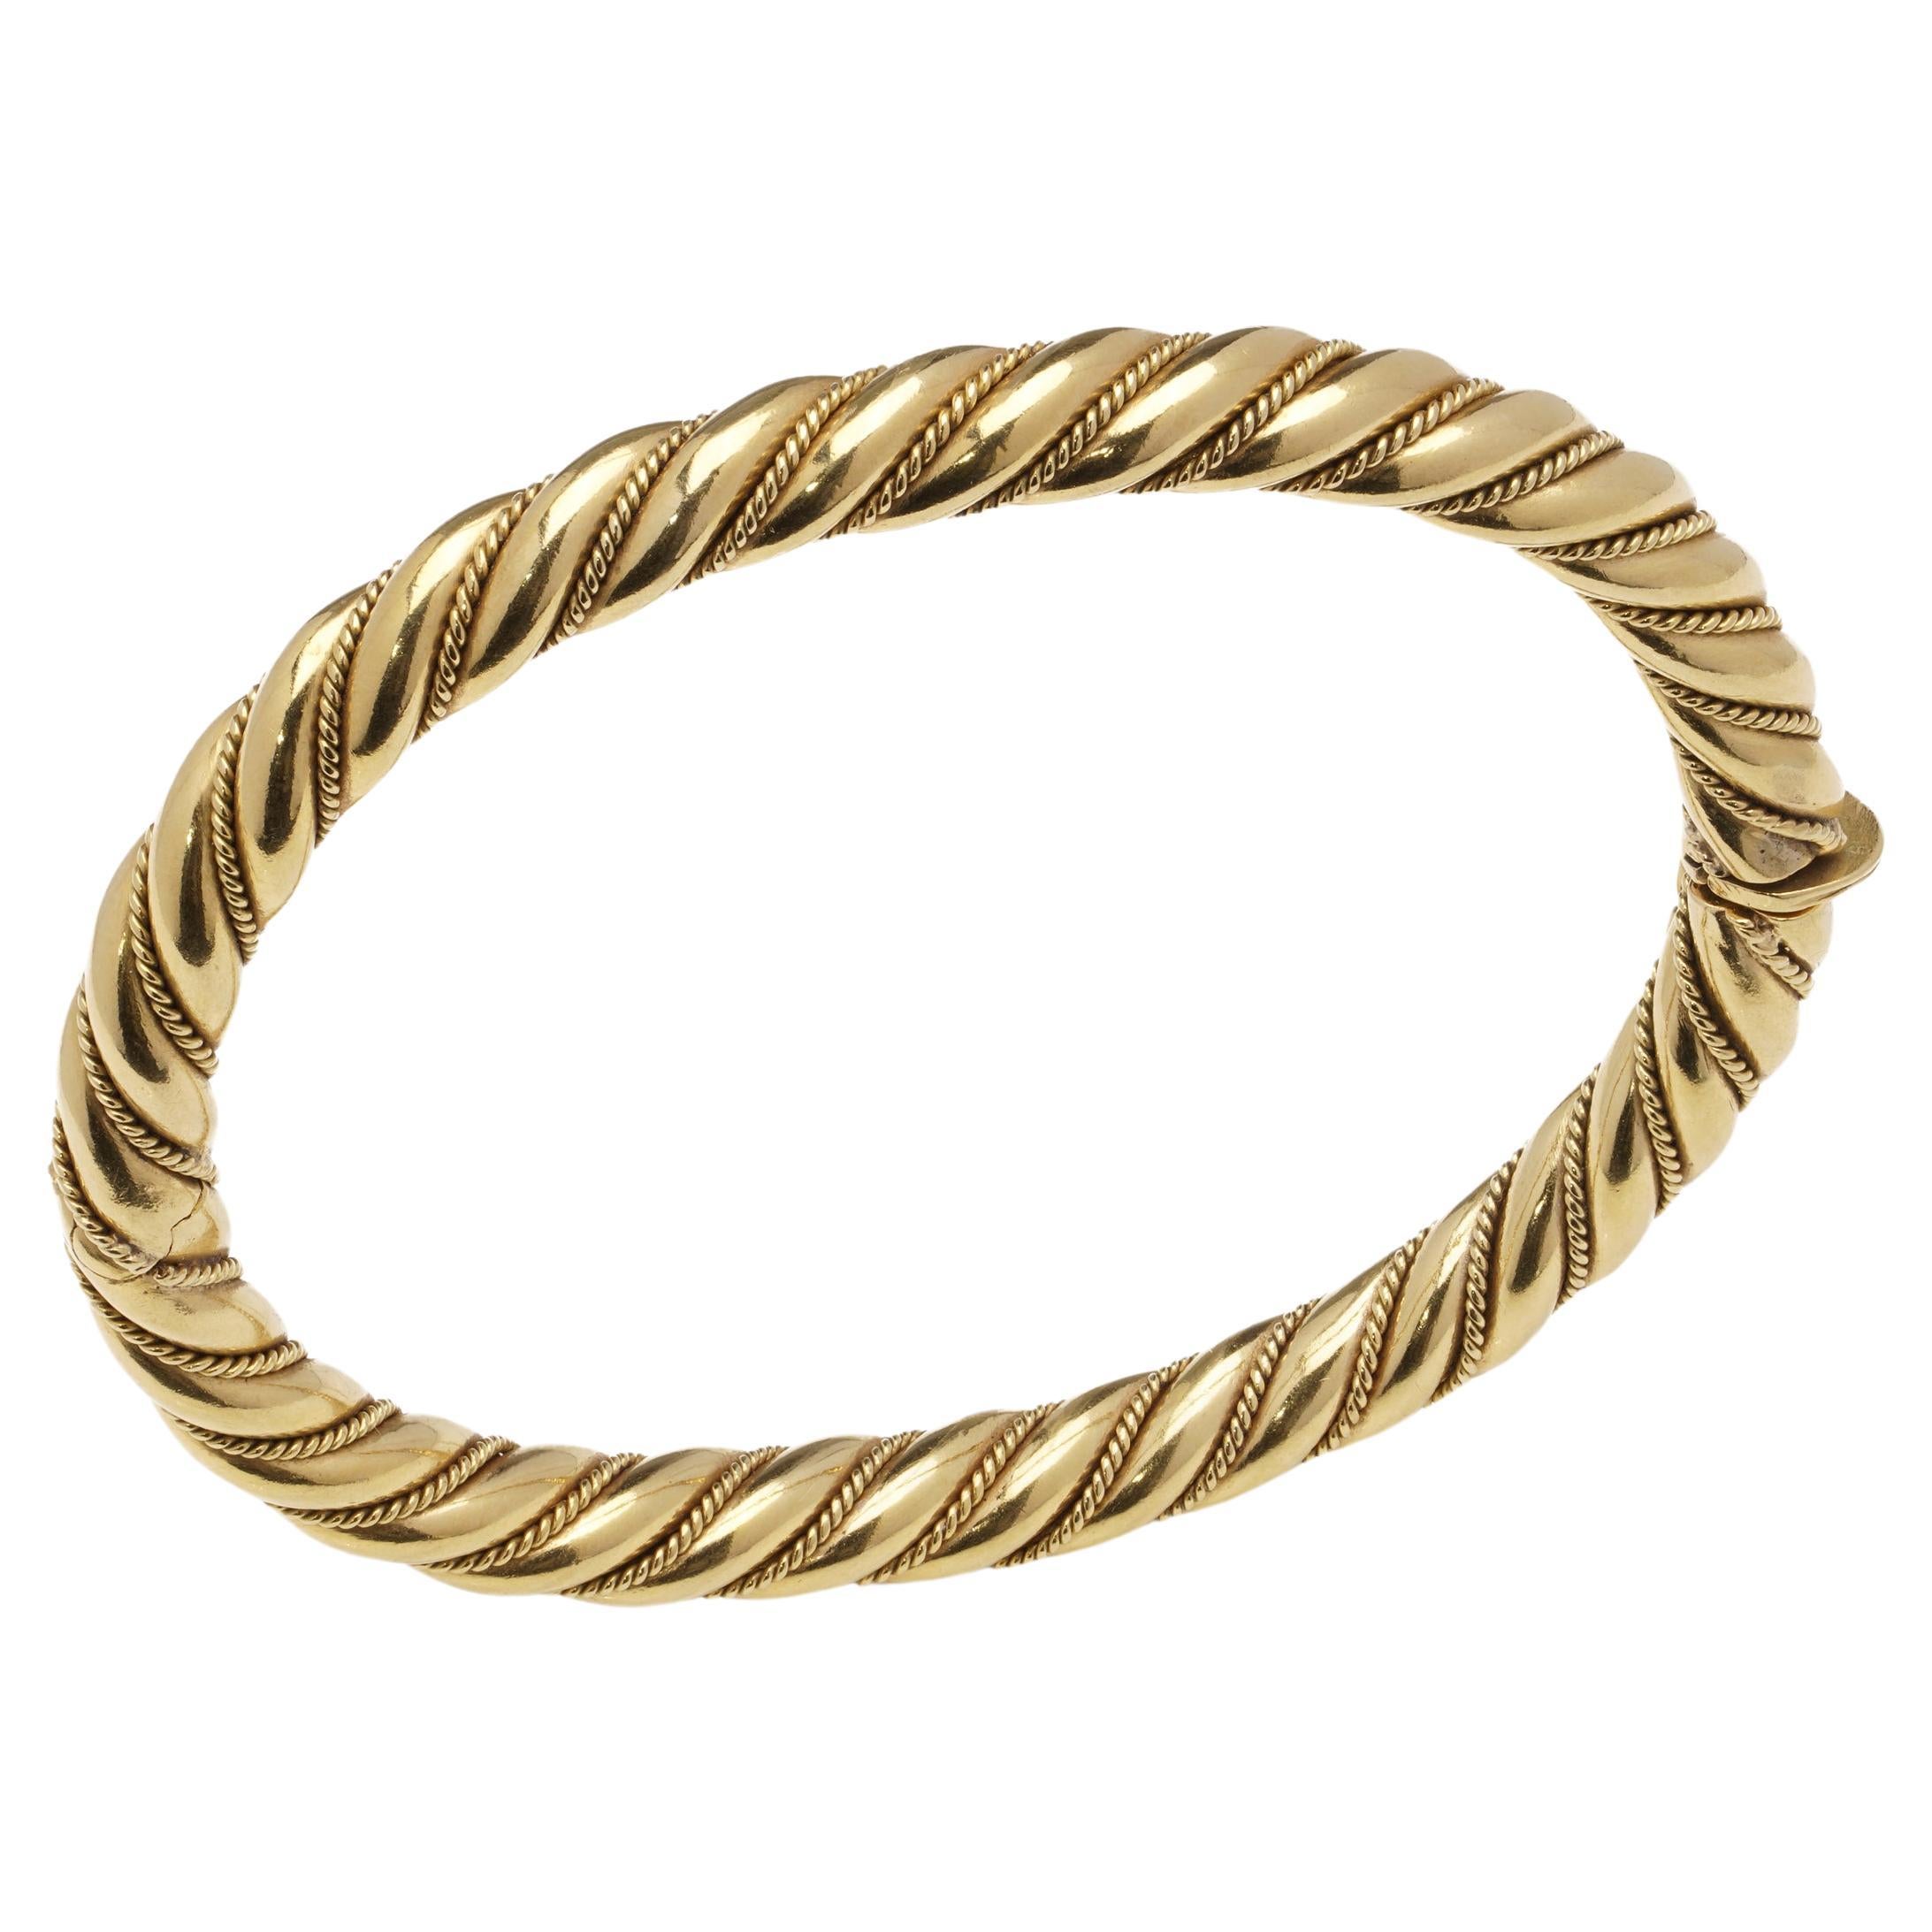 Vintage 18 kt. gold hinged bracelet with spiral twist design  For Sale